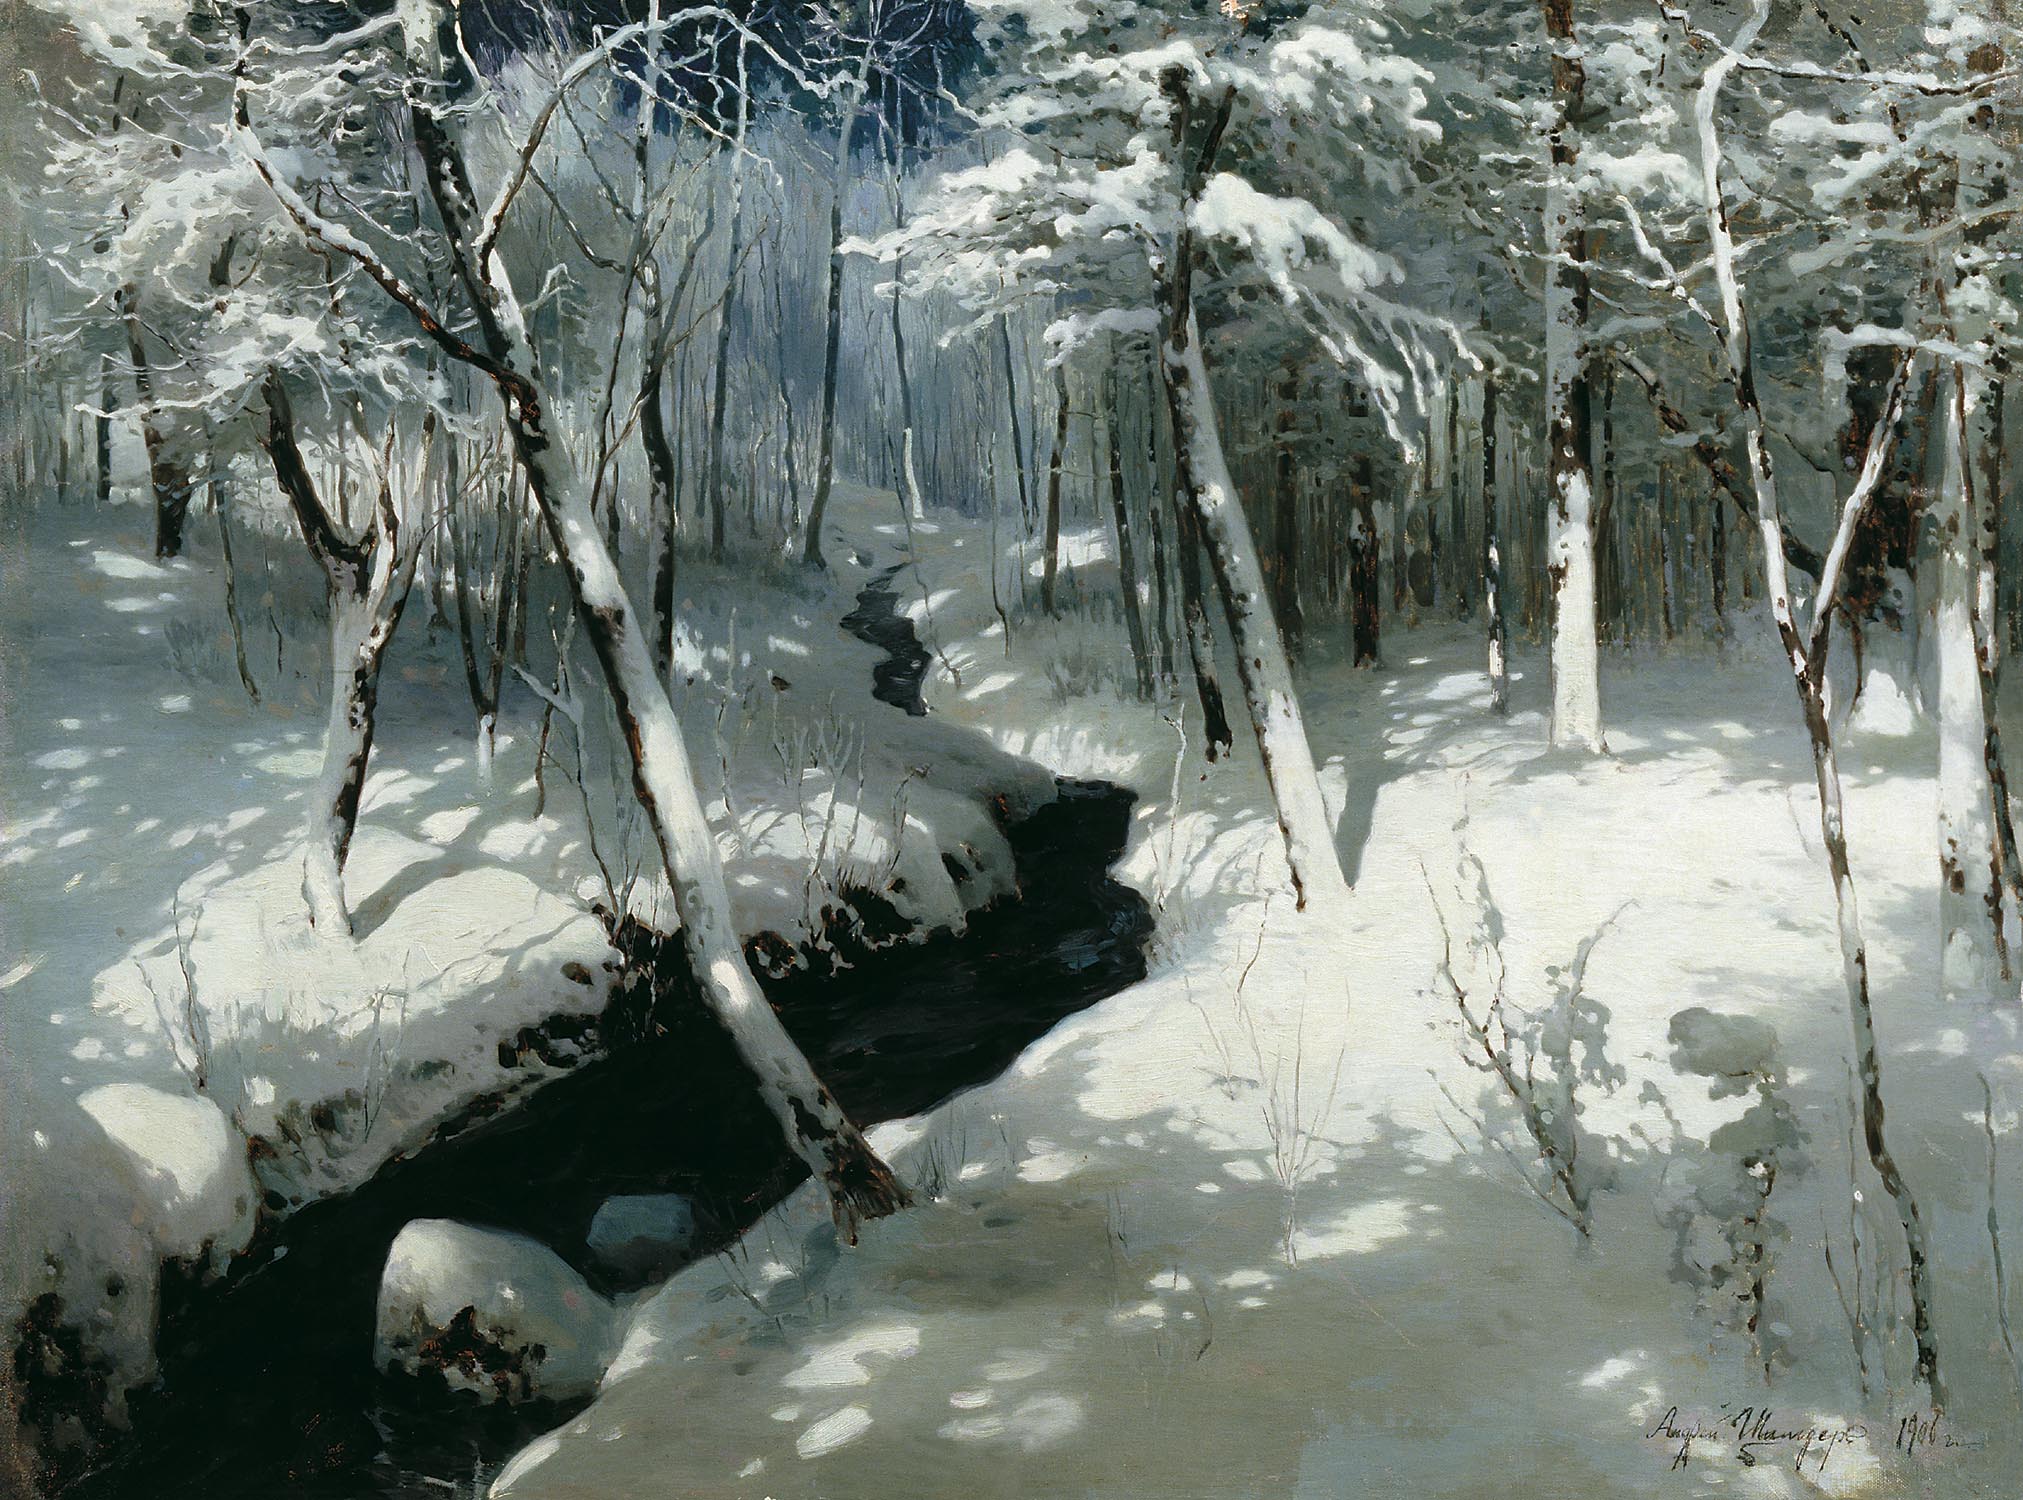 Андрей Николаевич Шильдер. "Ручей в лесу". 1906.